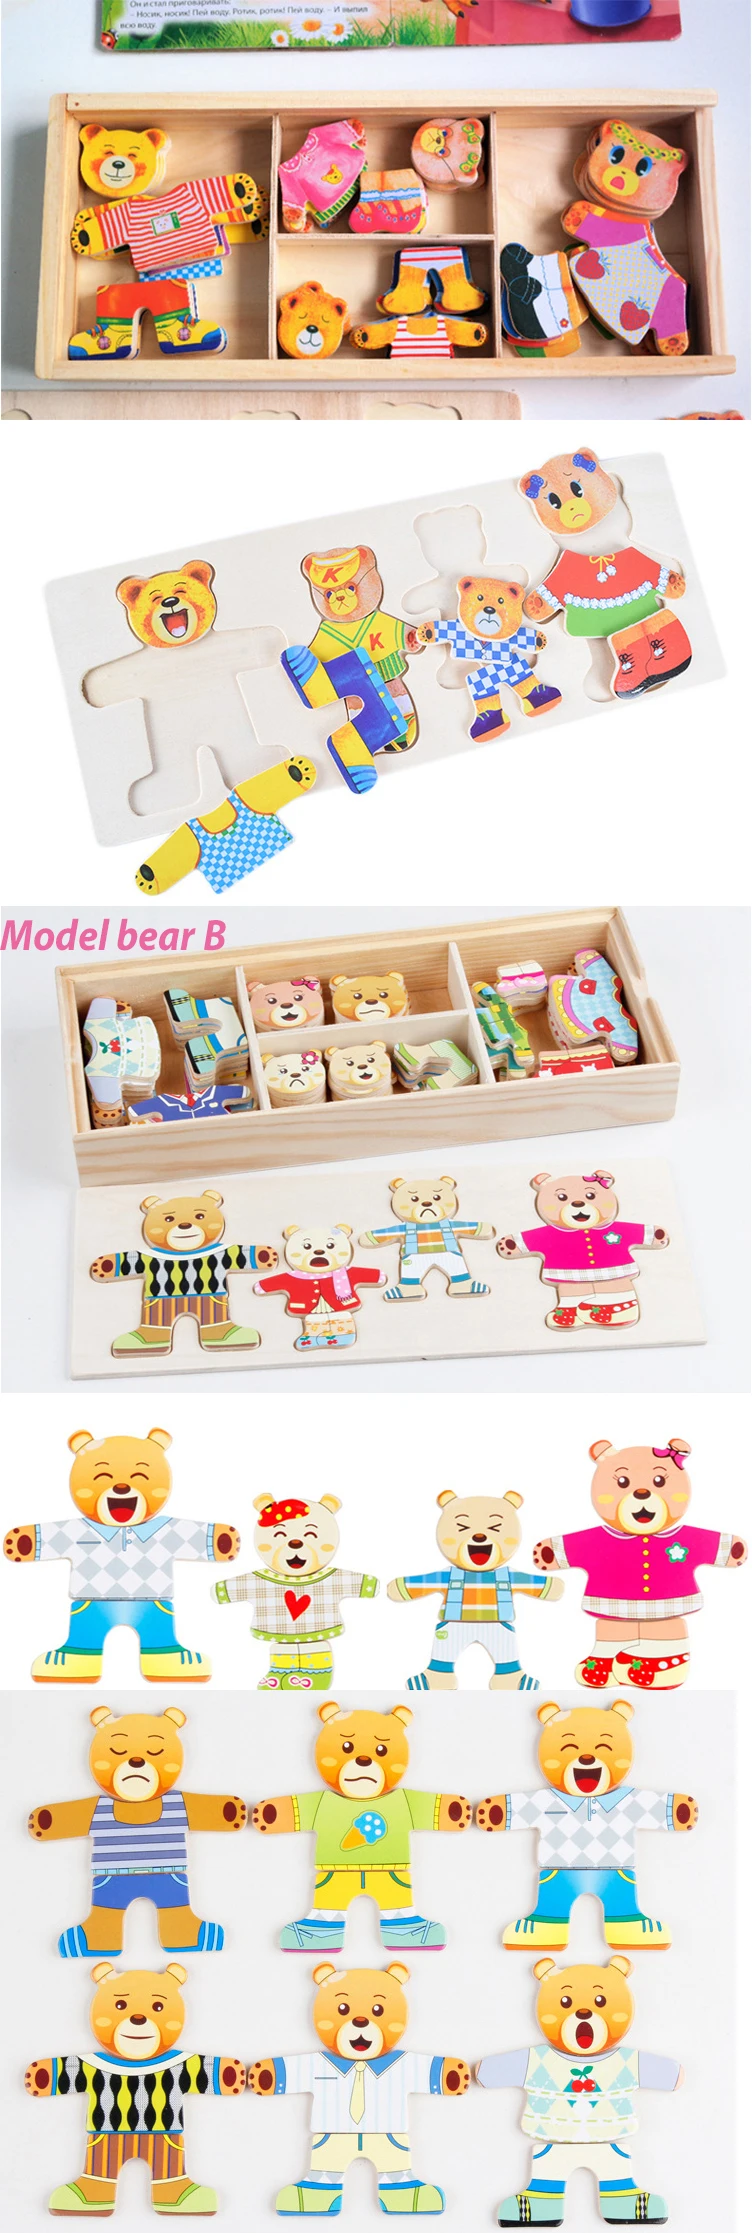 Пазлы, игрушки, деревянные блоки, Детские деревянные игрушки, медведь, туалетная игрушка, Обучающие игрушки, наборы моделей, строительные блоки